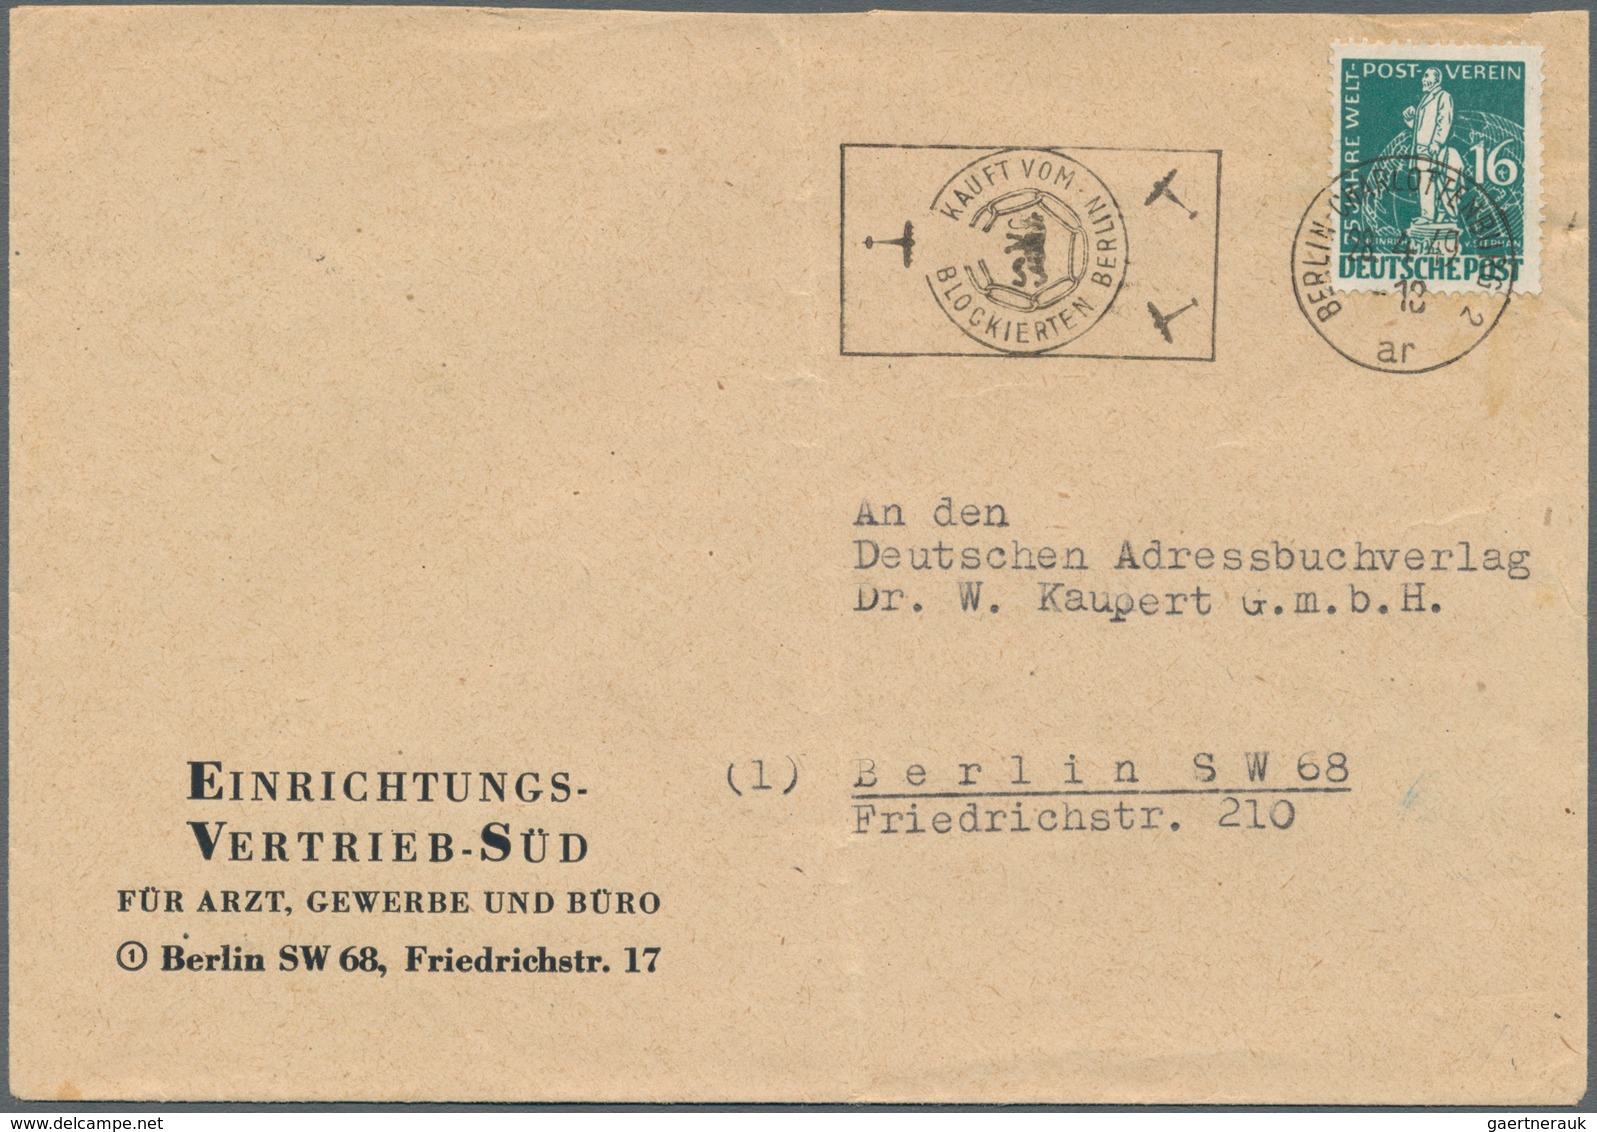 Berlin: 1820/1990 (ca.), Partie von ca. 790 Belegen, dabei auch Ganzsachen, Ansichtskarten, nette Fr